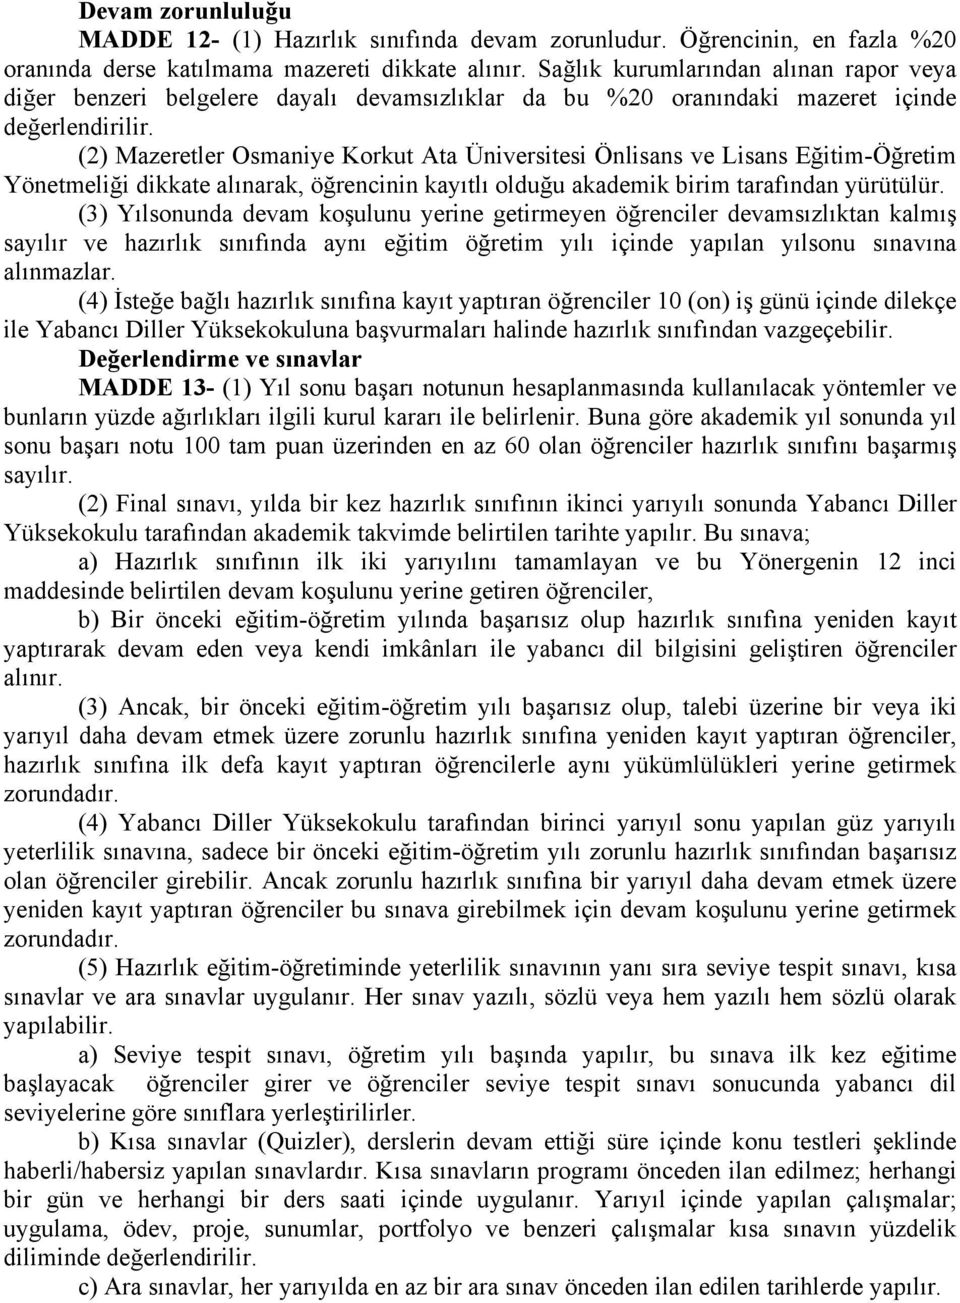 (2) Mazeretler Osmaniye Korkut Ata Üniversitesi Önlisans ve Lisans Eğitim-Öğretim Yönetmeliği dikkate alınarak, öğrencinin kayıtlı olduğu akademik birim tarafından yürütülür.